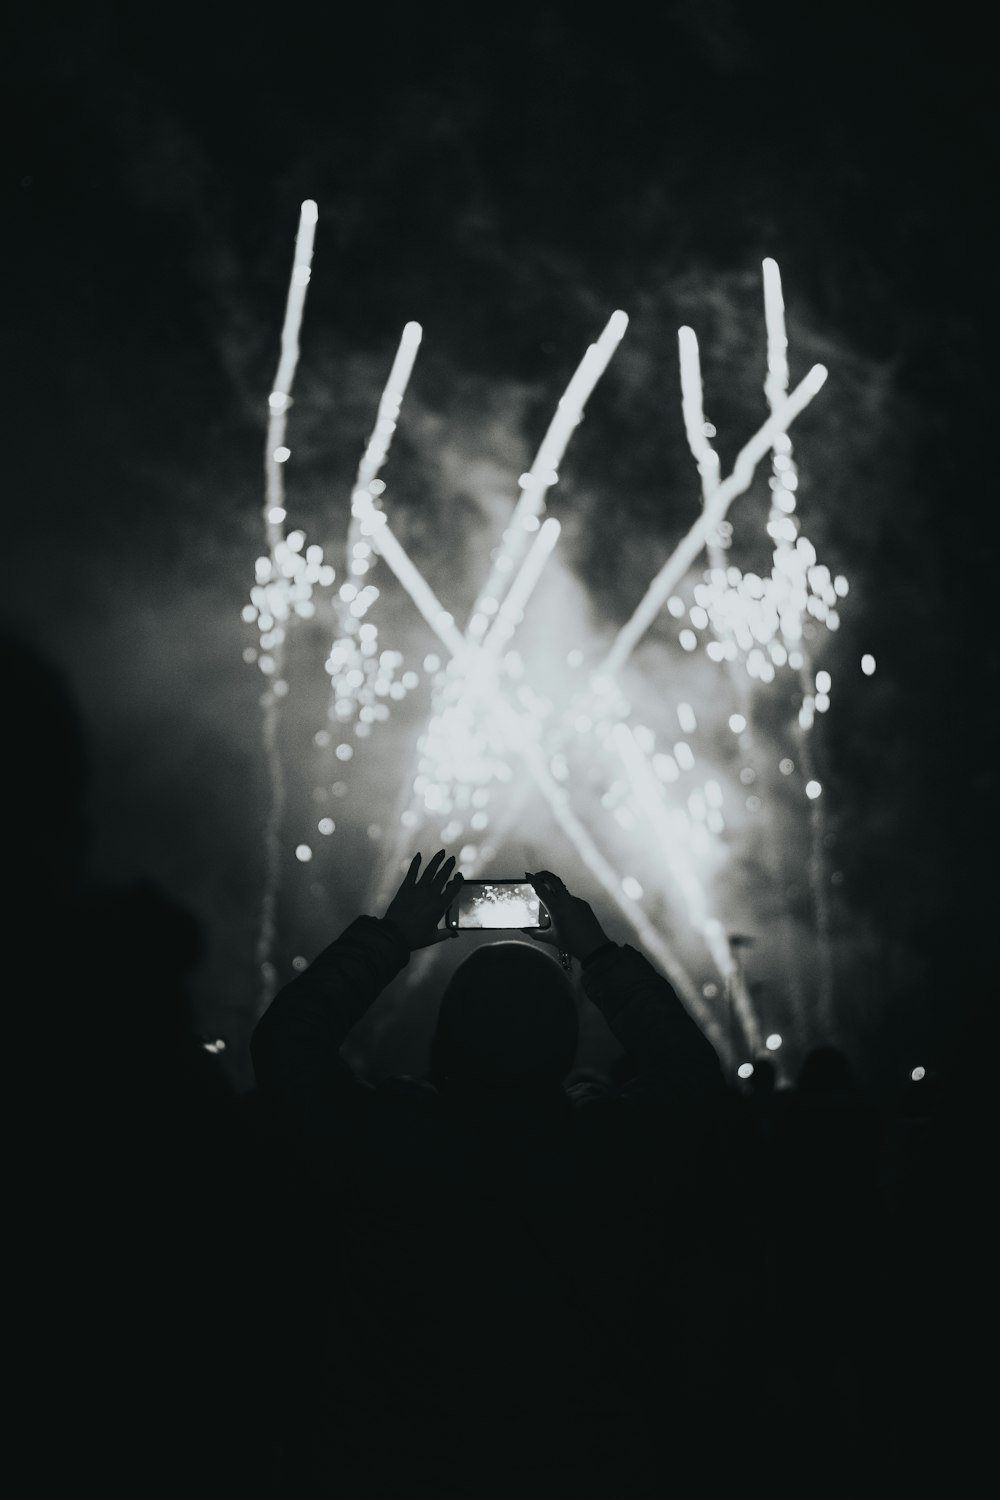 Una persona tomando una foto de fuegos artificiales con un teléfono celular